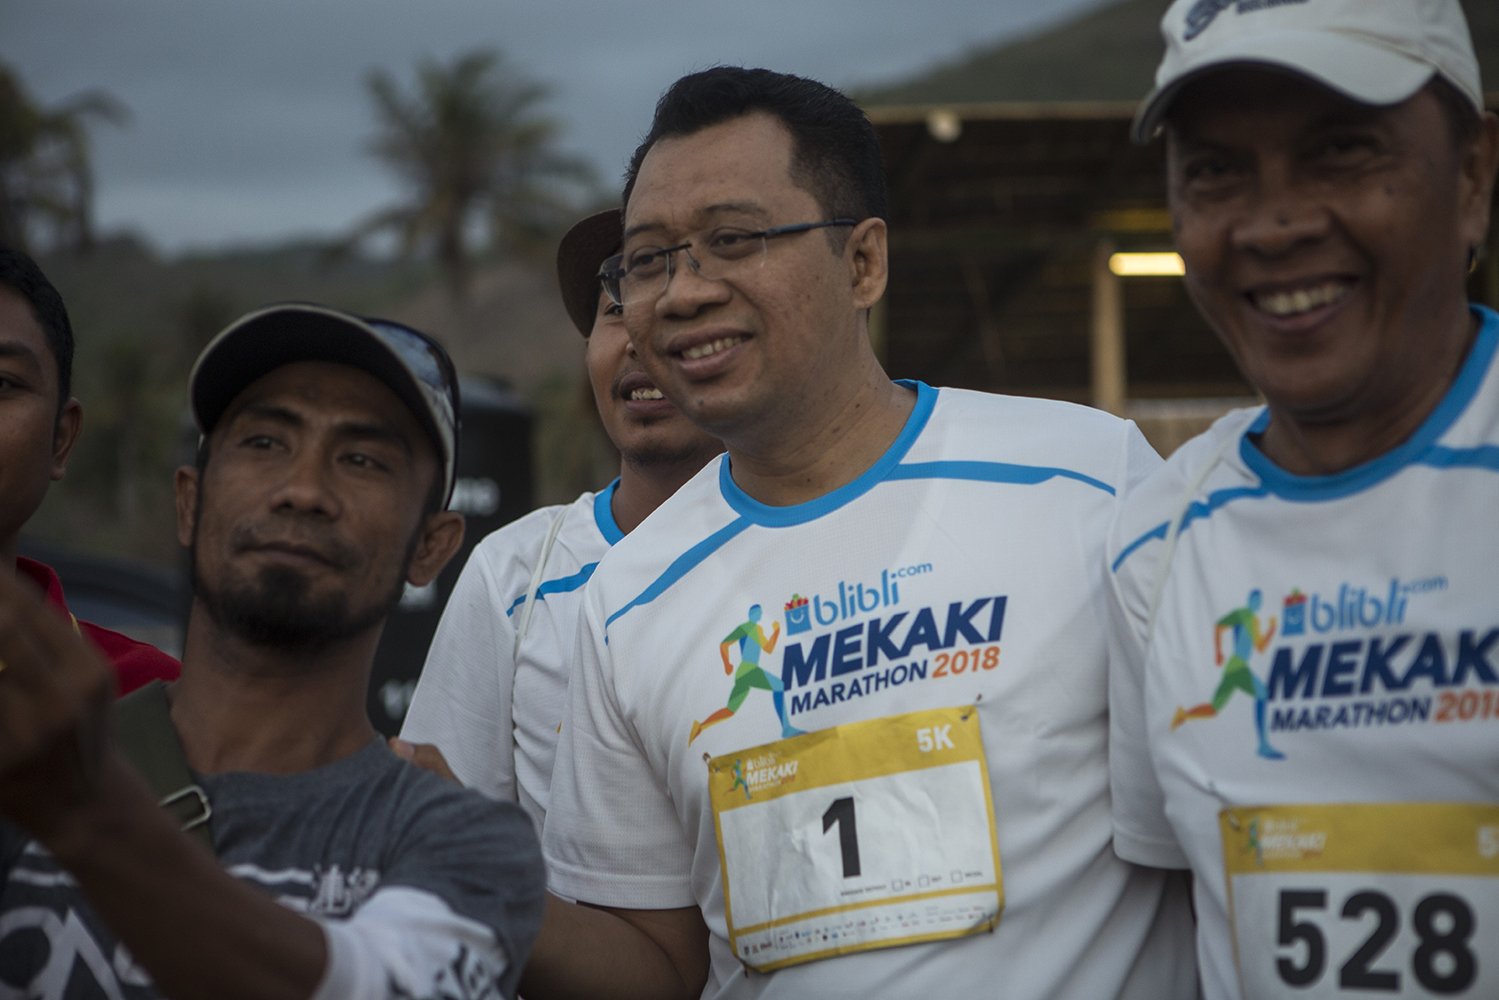 Gubernur NTB Zulkieflimansyah menyatakan dukungannya untuk mengembangkan dan memajukan potensi pariwisata di Mekaki, Sekotong, Lombok, Nusa Tenggara Barat.